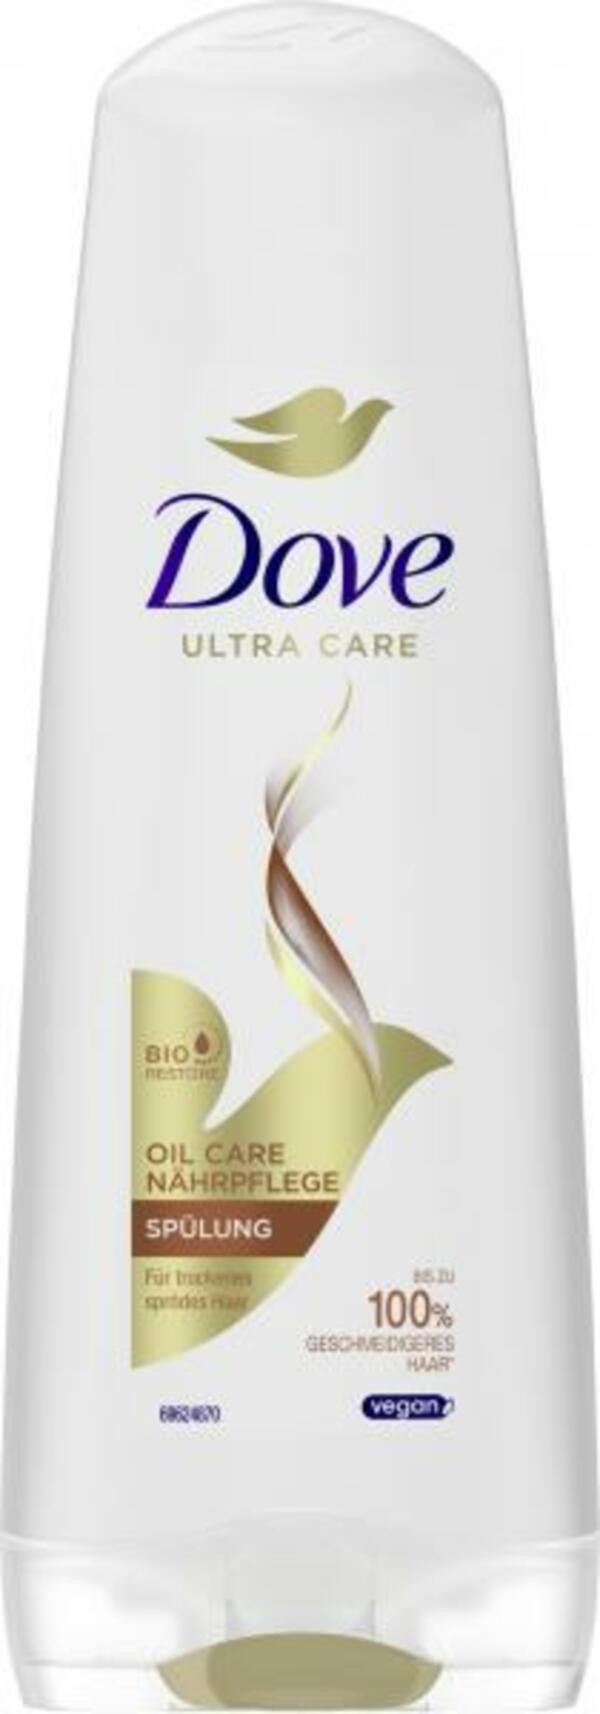 Bild 1 von Dove Oil Care Nährpflege Spülung